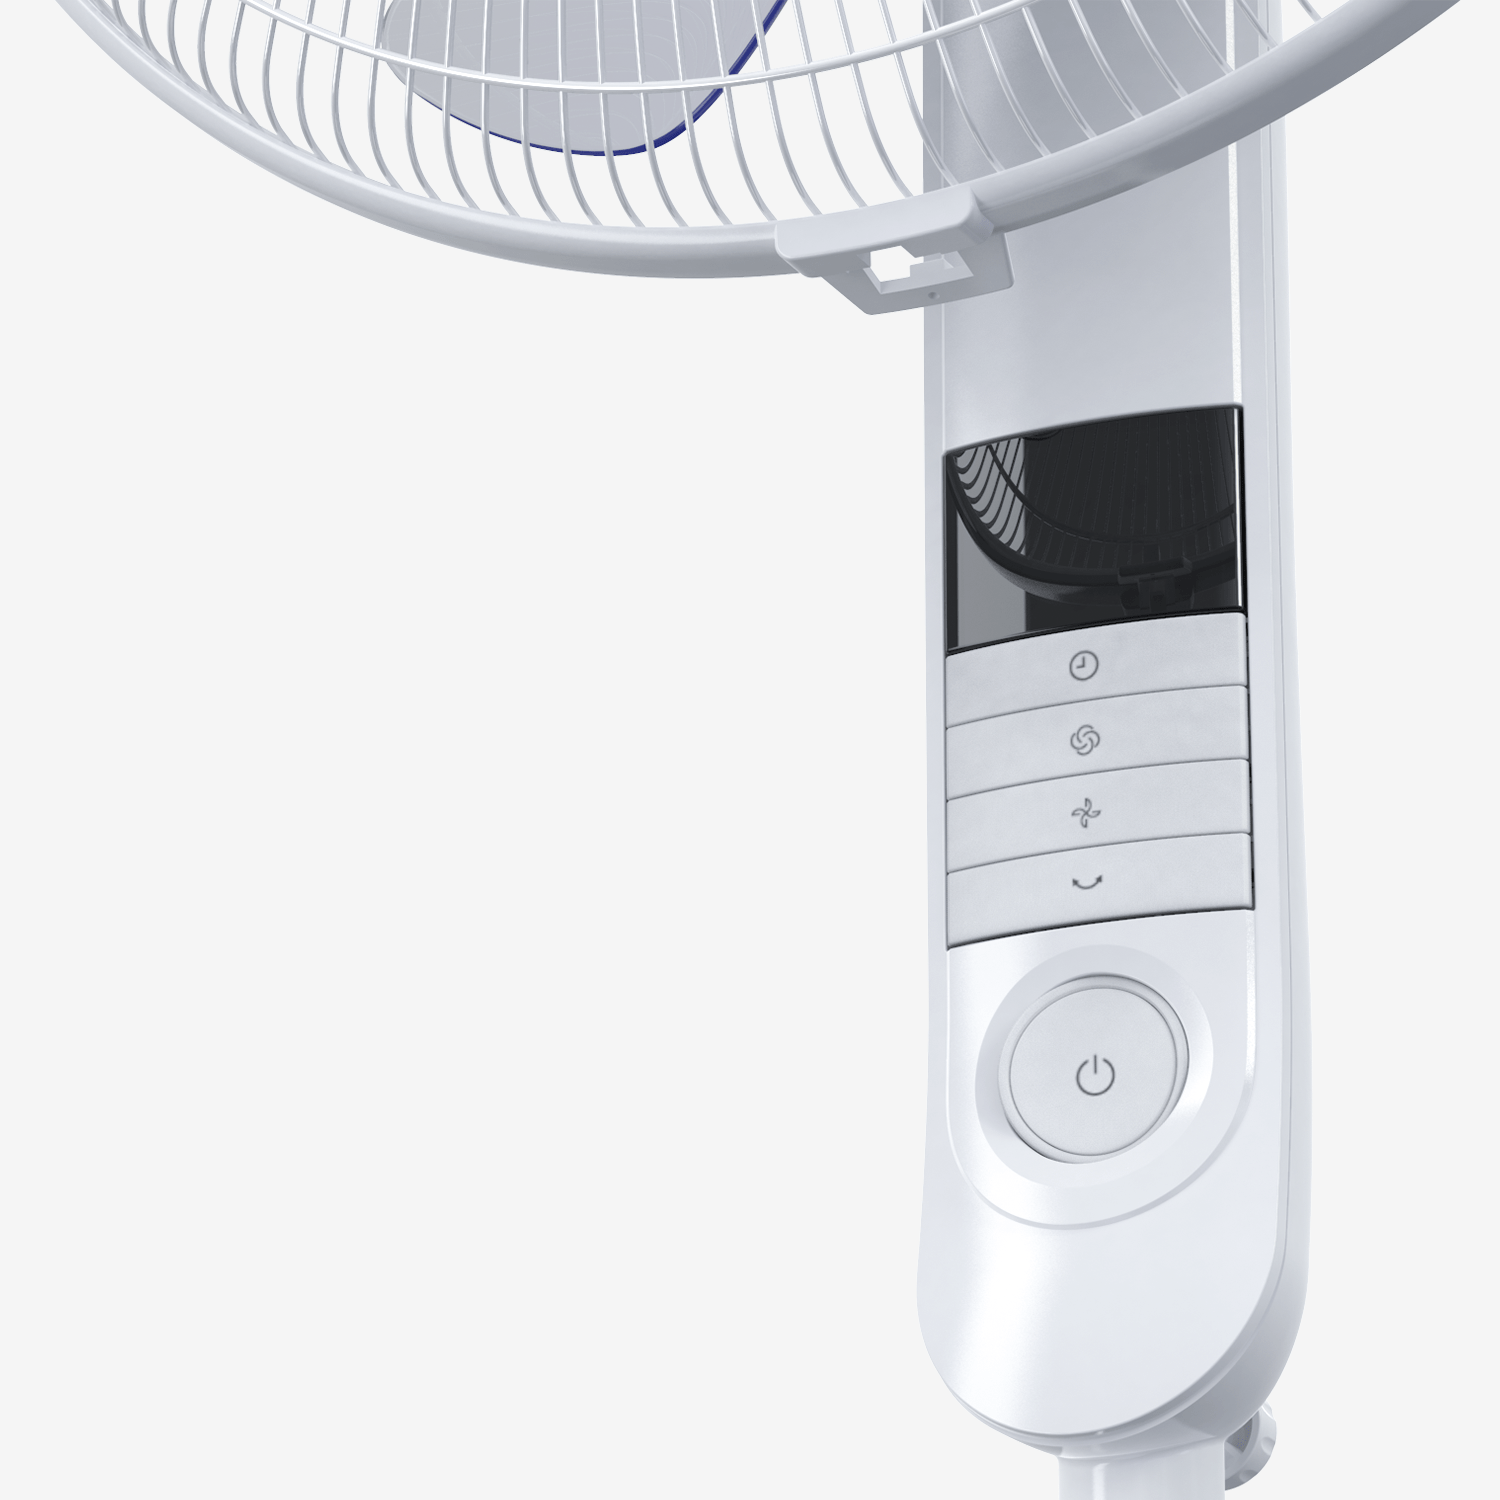 Ventilateur sur pied de 16 po avec 4 modes de ventilation et télécommande - Blanc